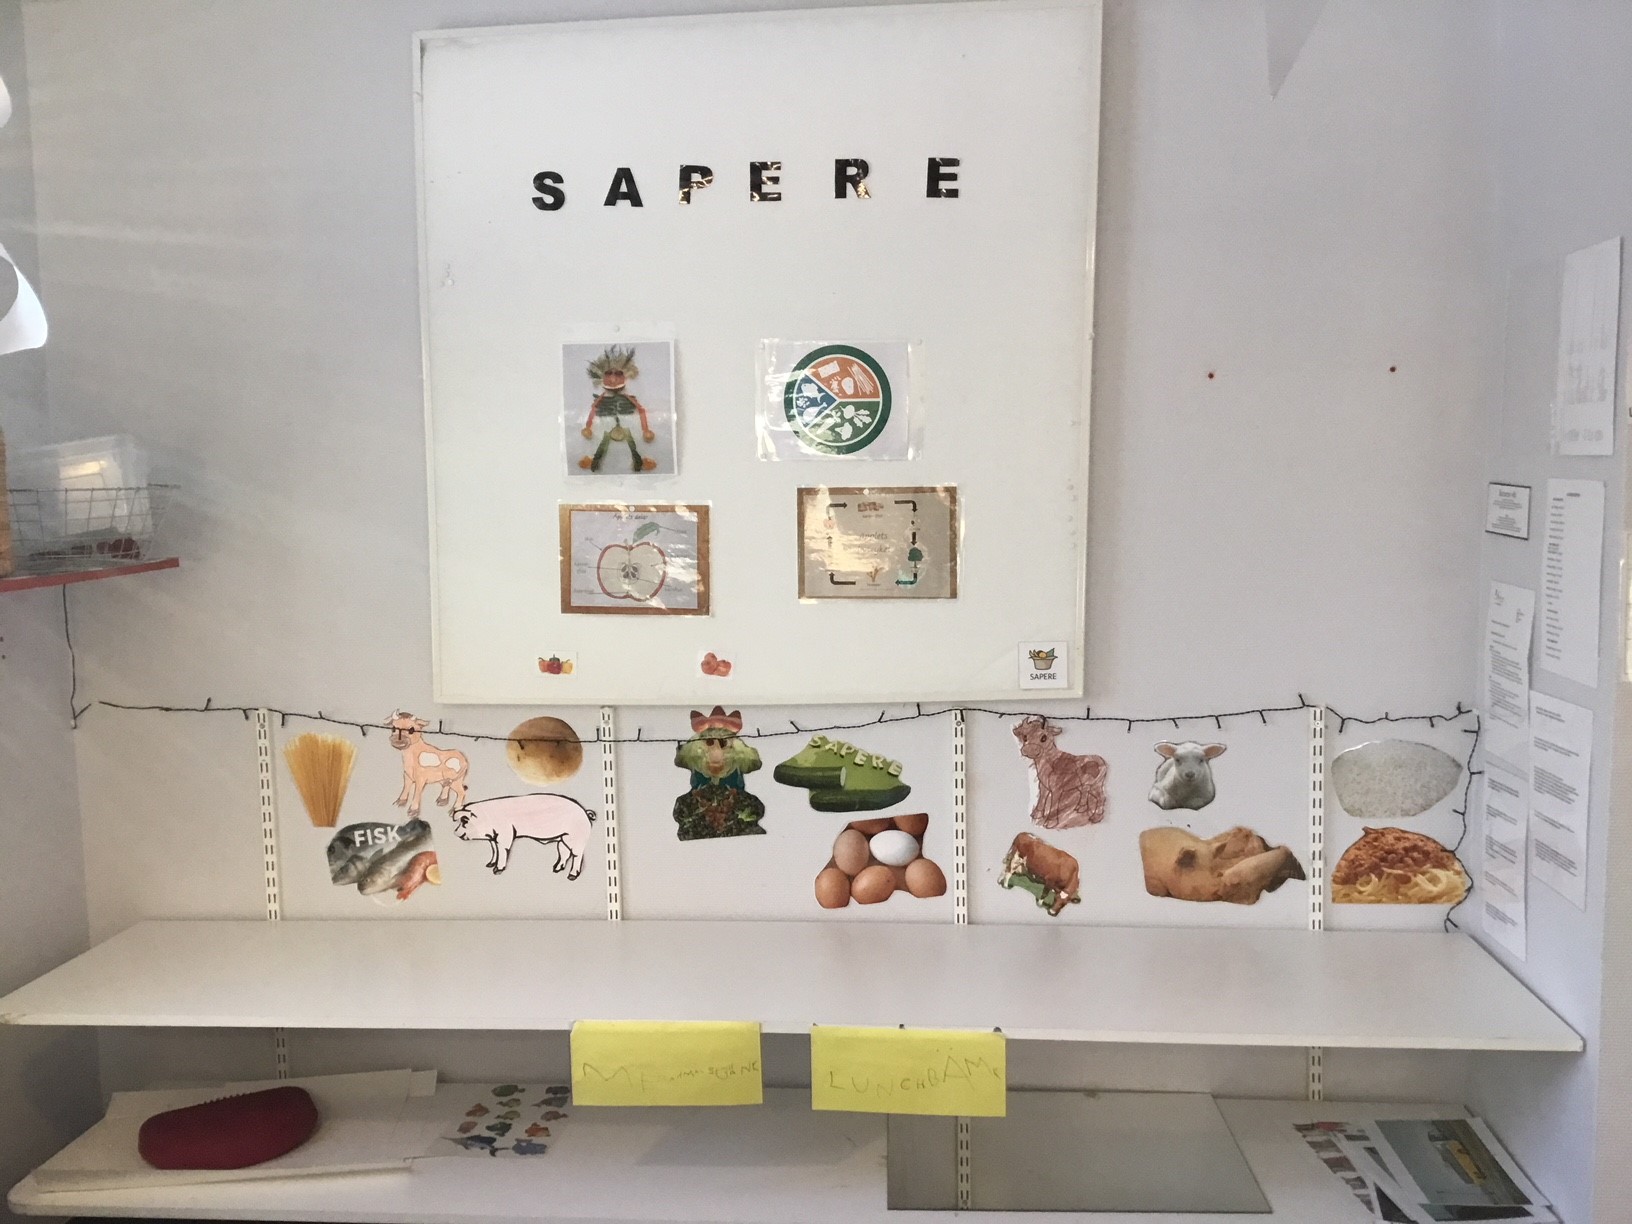 En informationstavla om Sapere. Bilder på olika råvaror som ägg, potatis